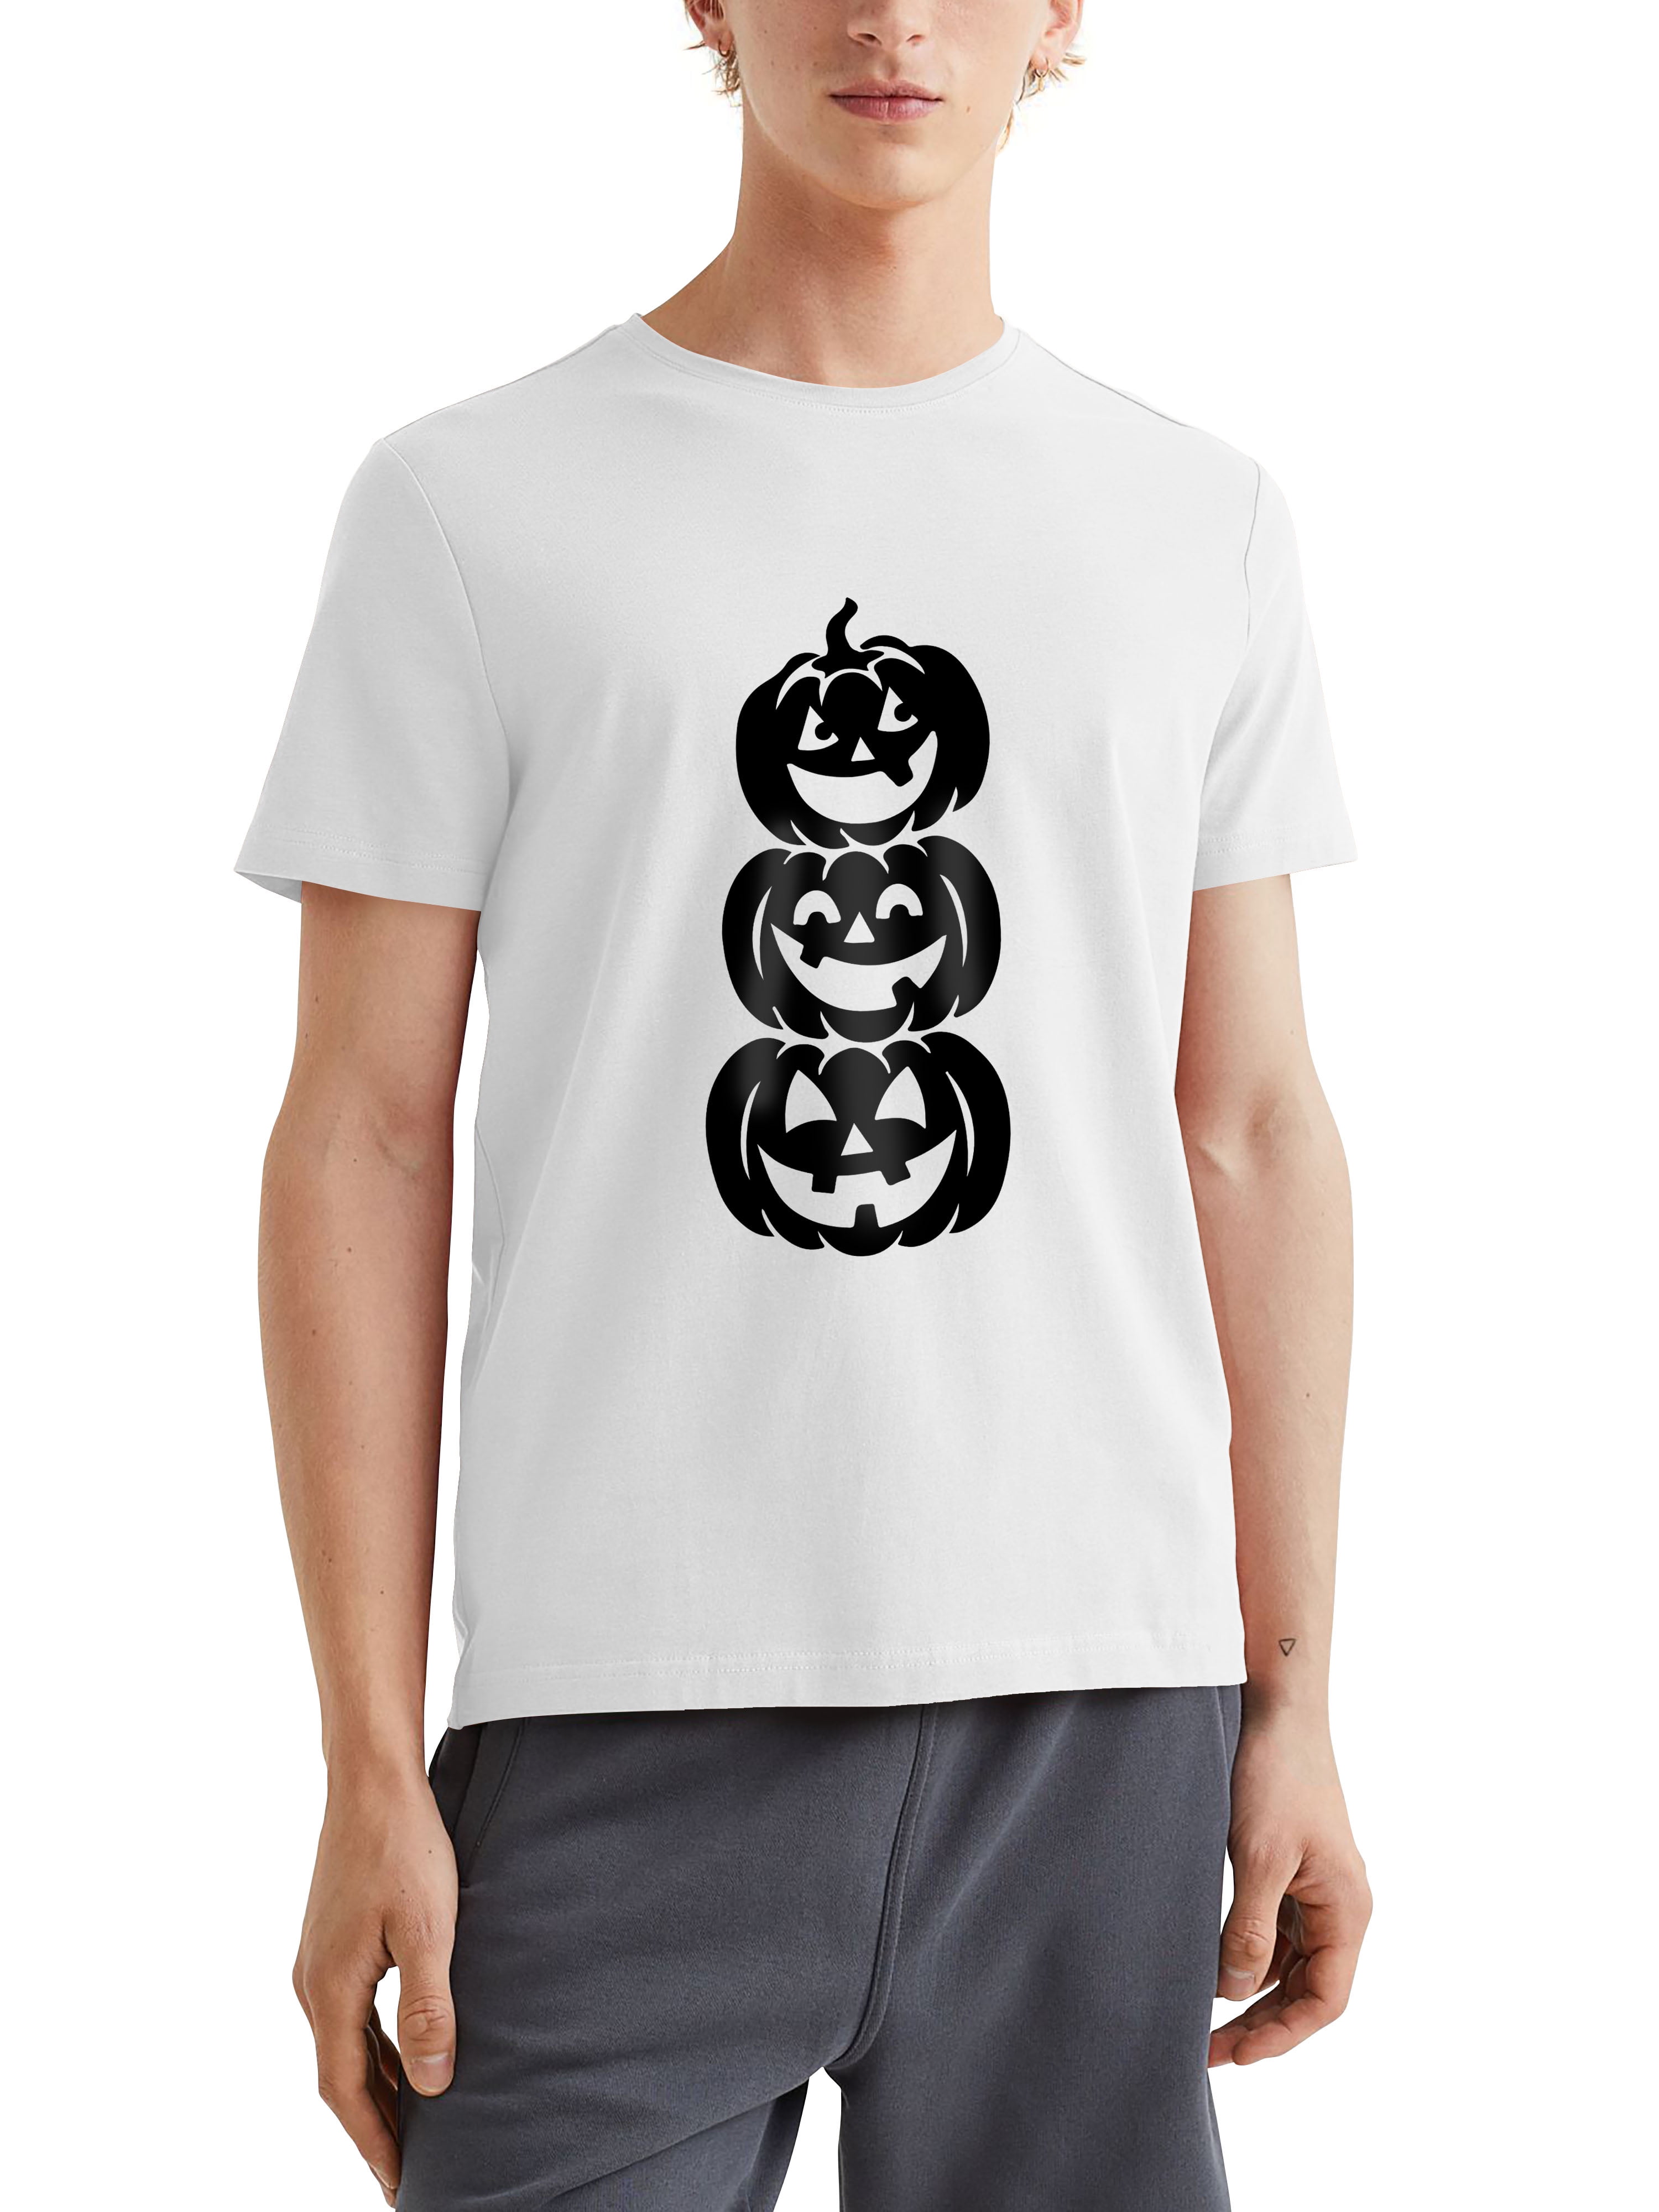 Jack-O-Lantern T-Shirt - FiveFingerTees